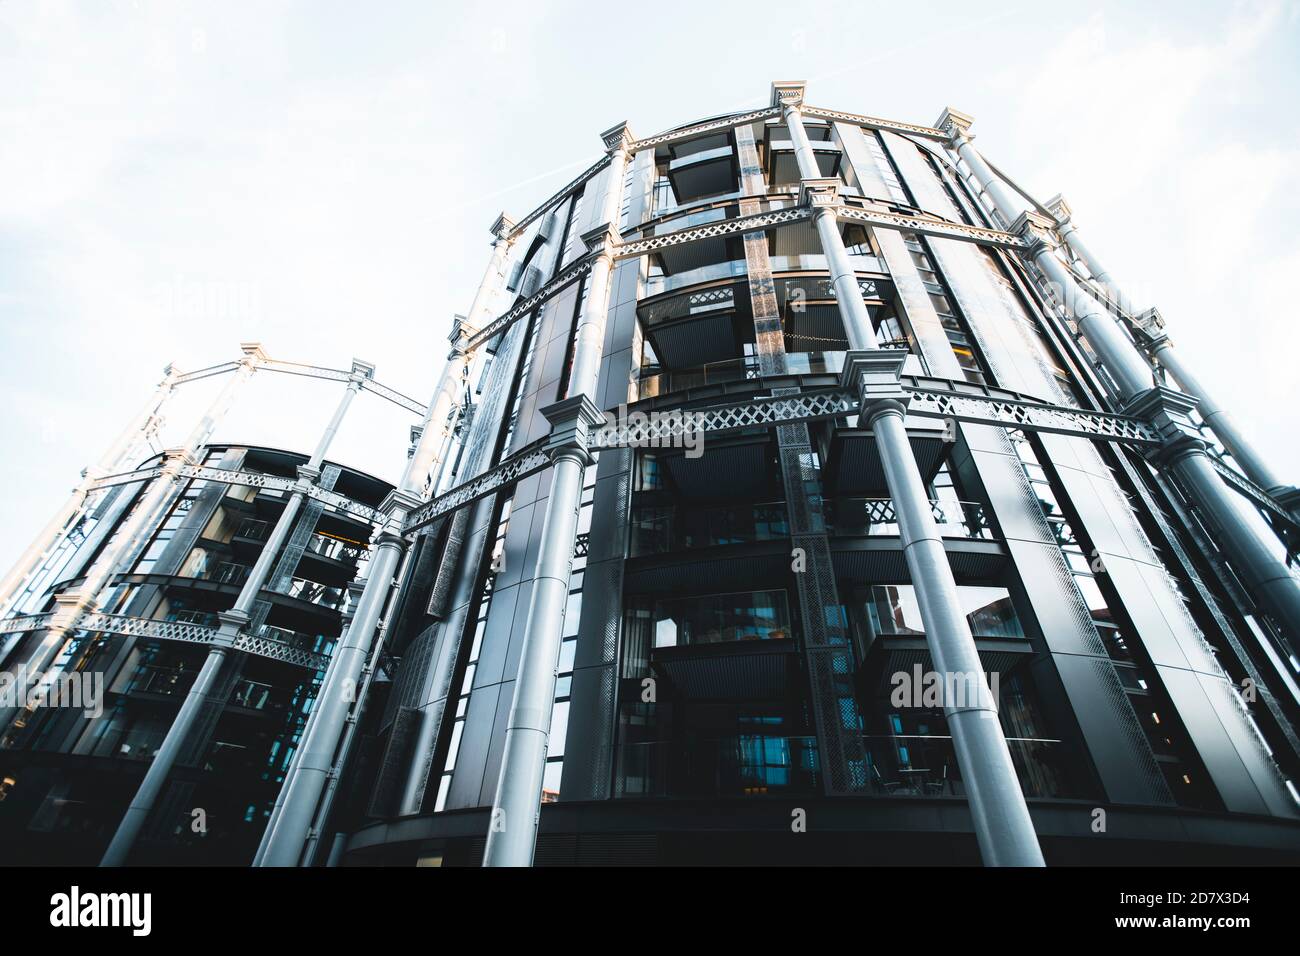 King's Cross Londres, Reino Unido, 12 de julio de 2019: Granary Square residencial edificio columnas de hierro estructura gas titular Foto de stock